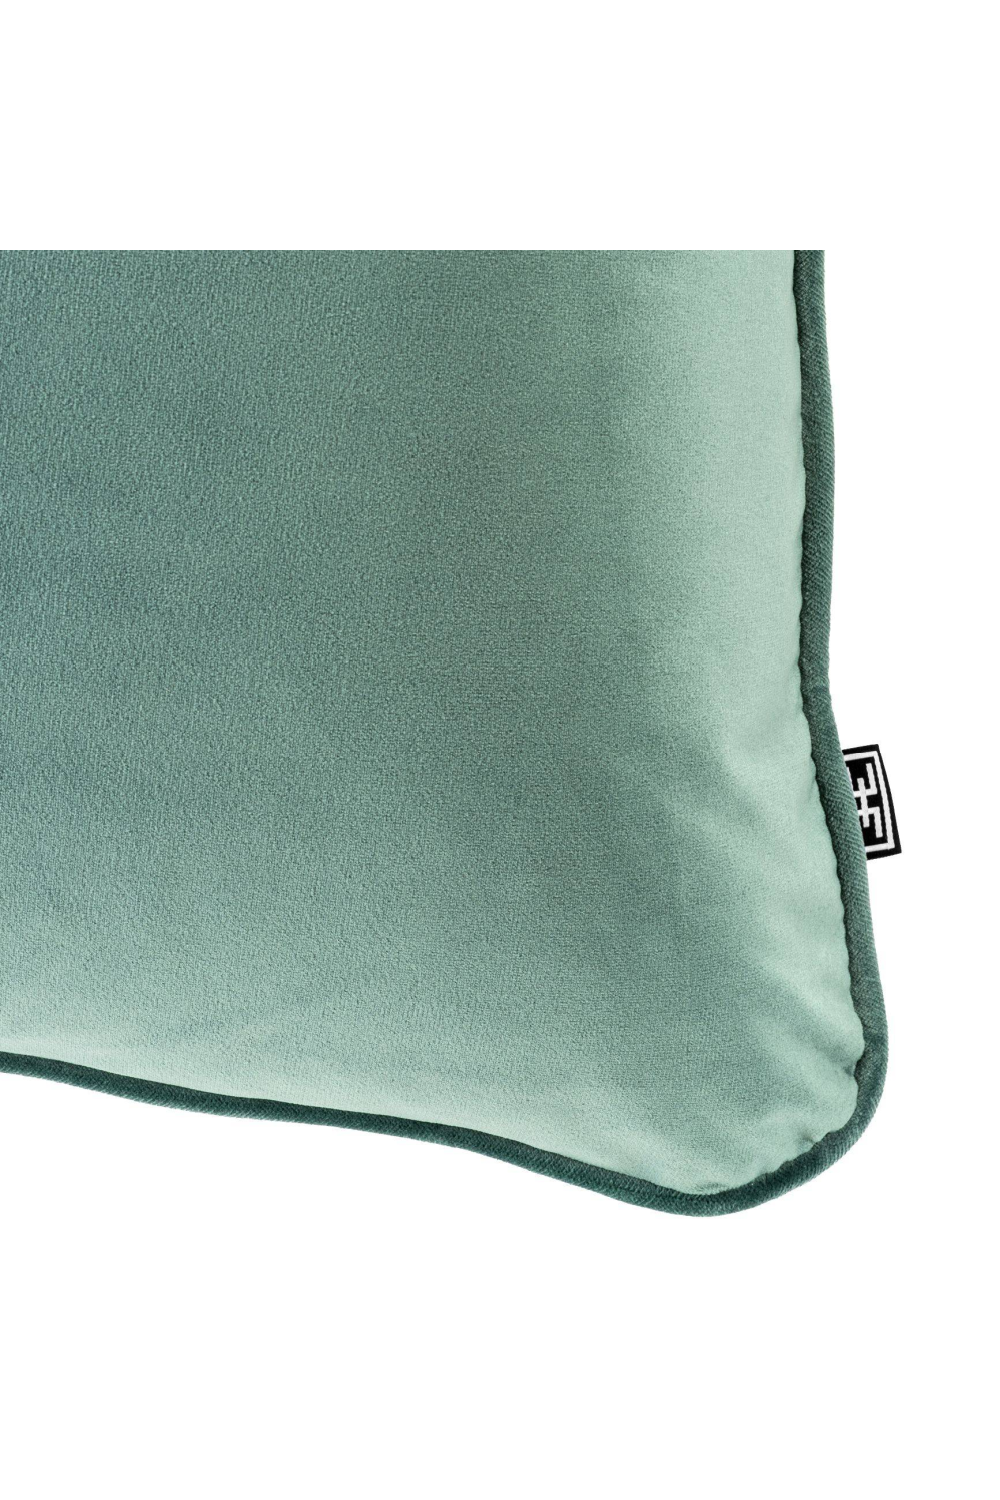 Square Velvet Turquoise Pillow | Eichholtz Roche | OROA